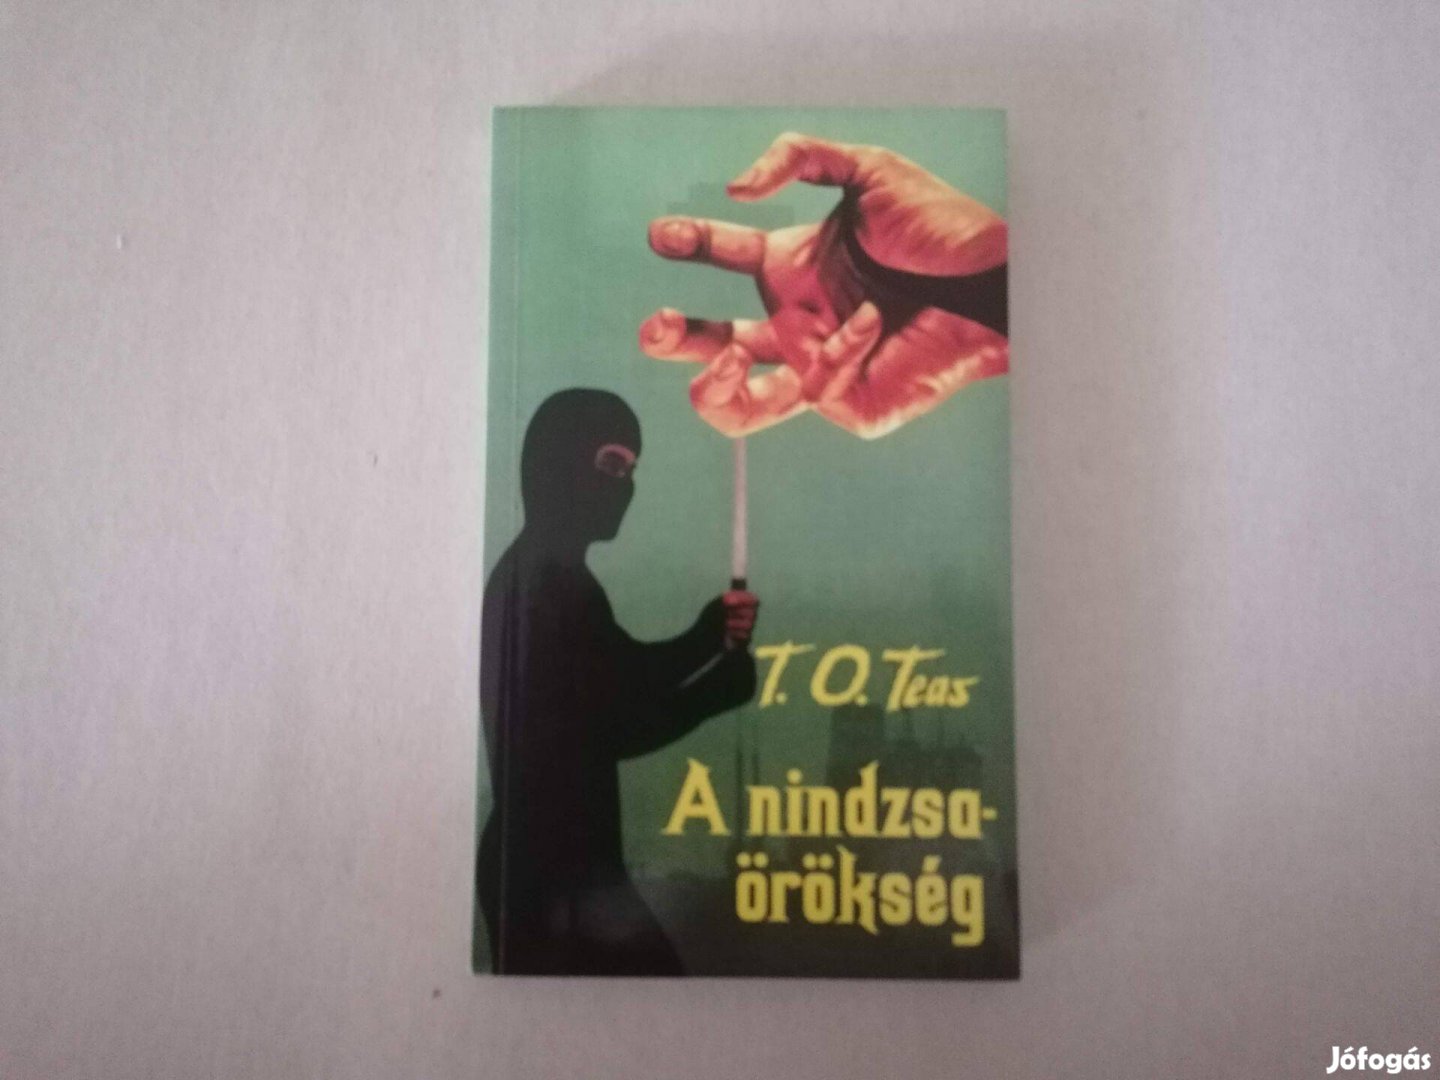 T. O. Teas: A nindzsaörökség című könyve eladó !